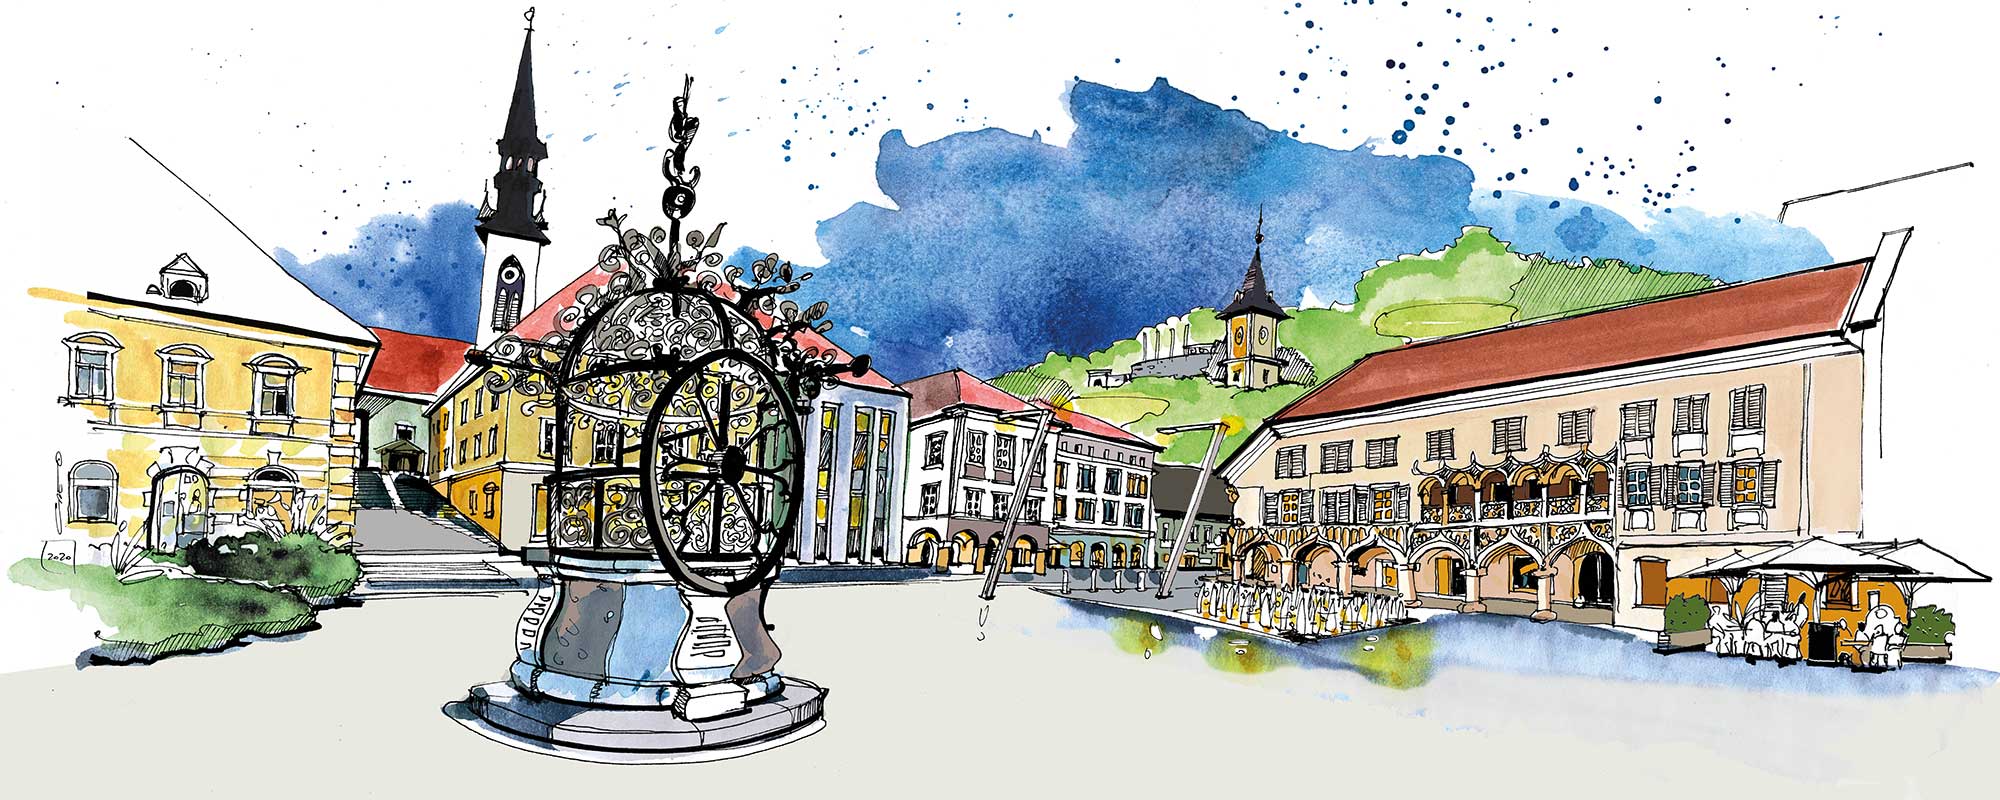 Aquarell vo Hauptplatz mit Rathaus, Eiserner Brunnen, Kornmesserhaus und Blick auf den Schlossberg mit Uhrturm